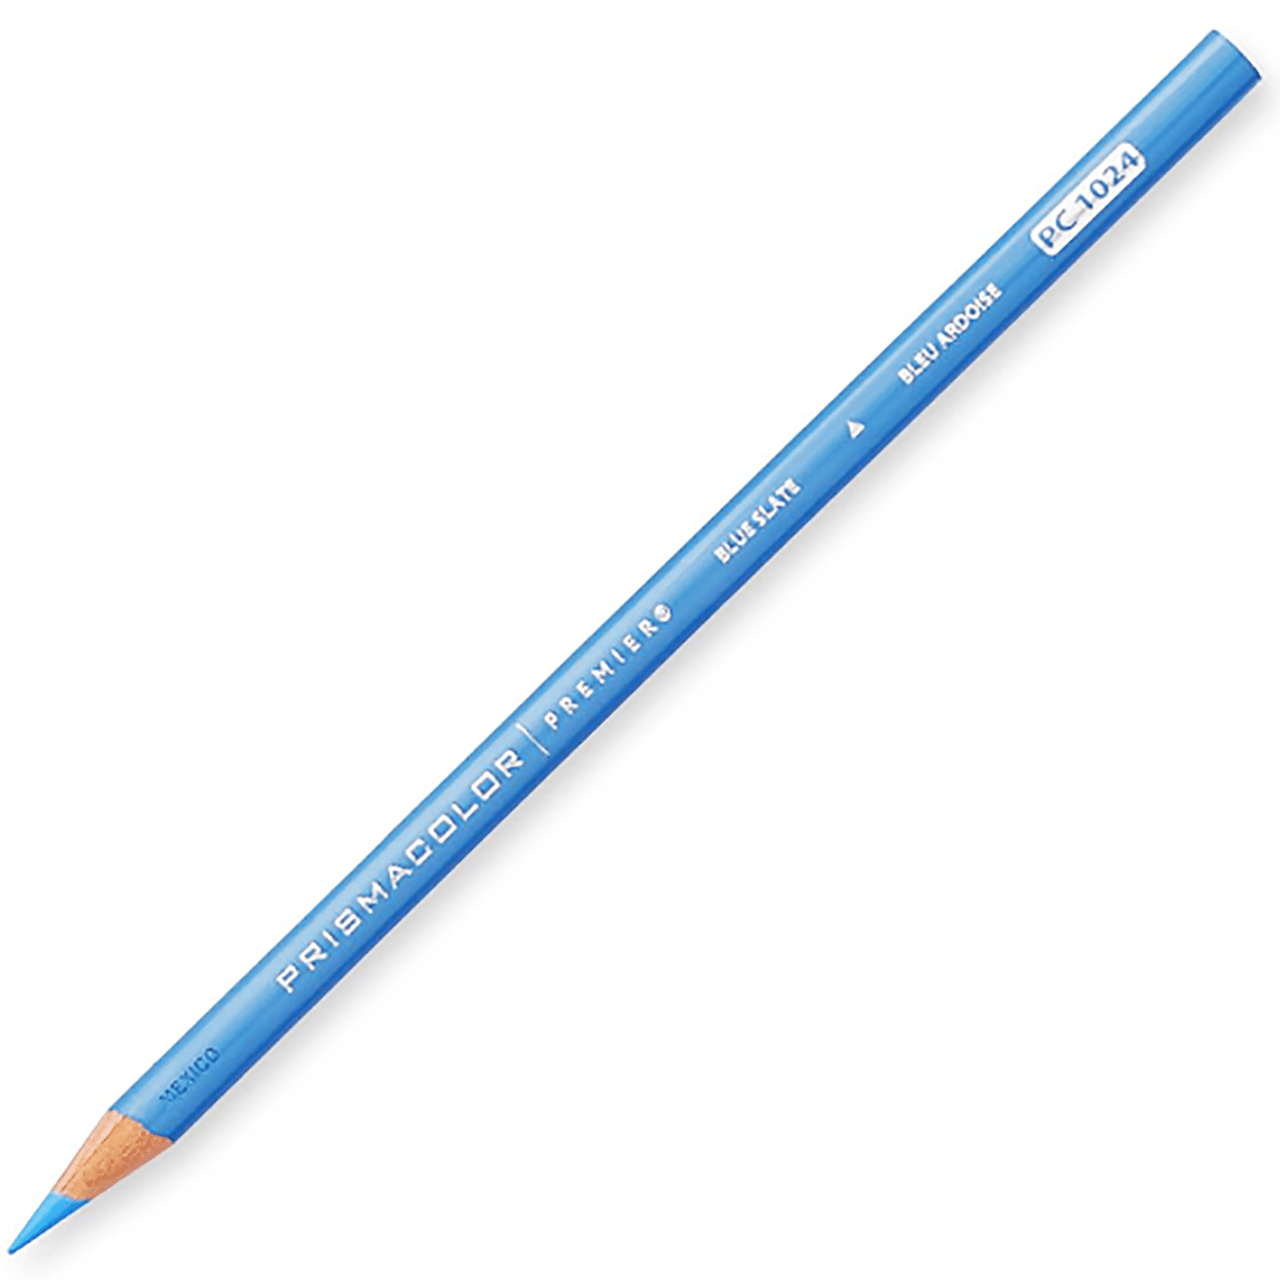 Prismacolor Soft Core Colored Pencil PC1089 Pale Sage